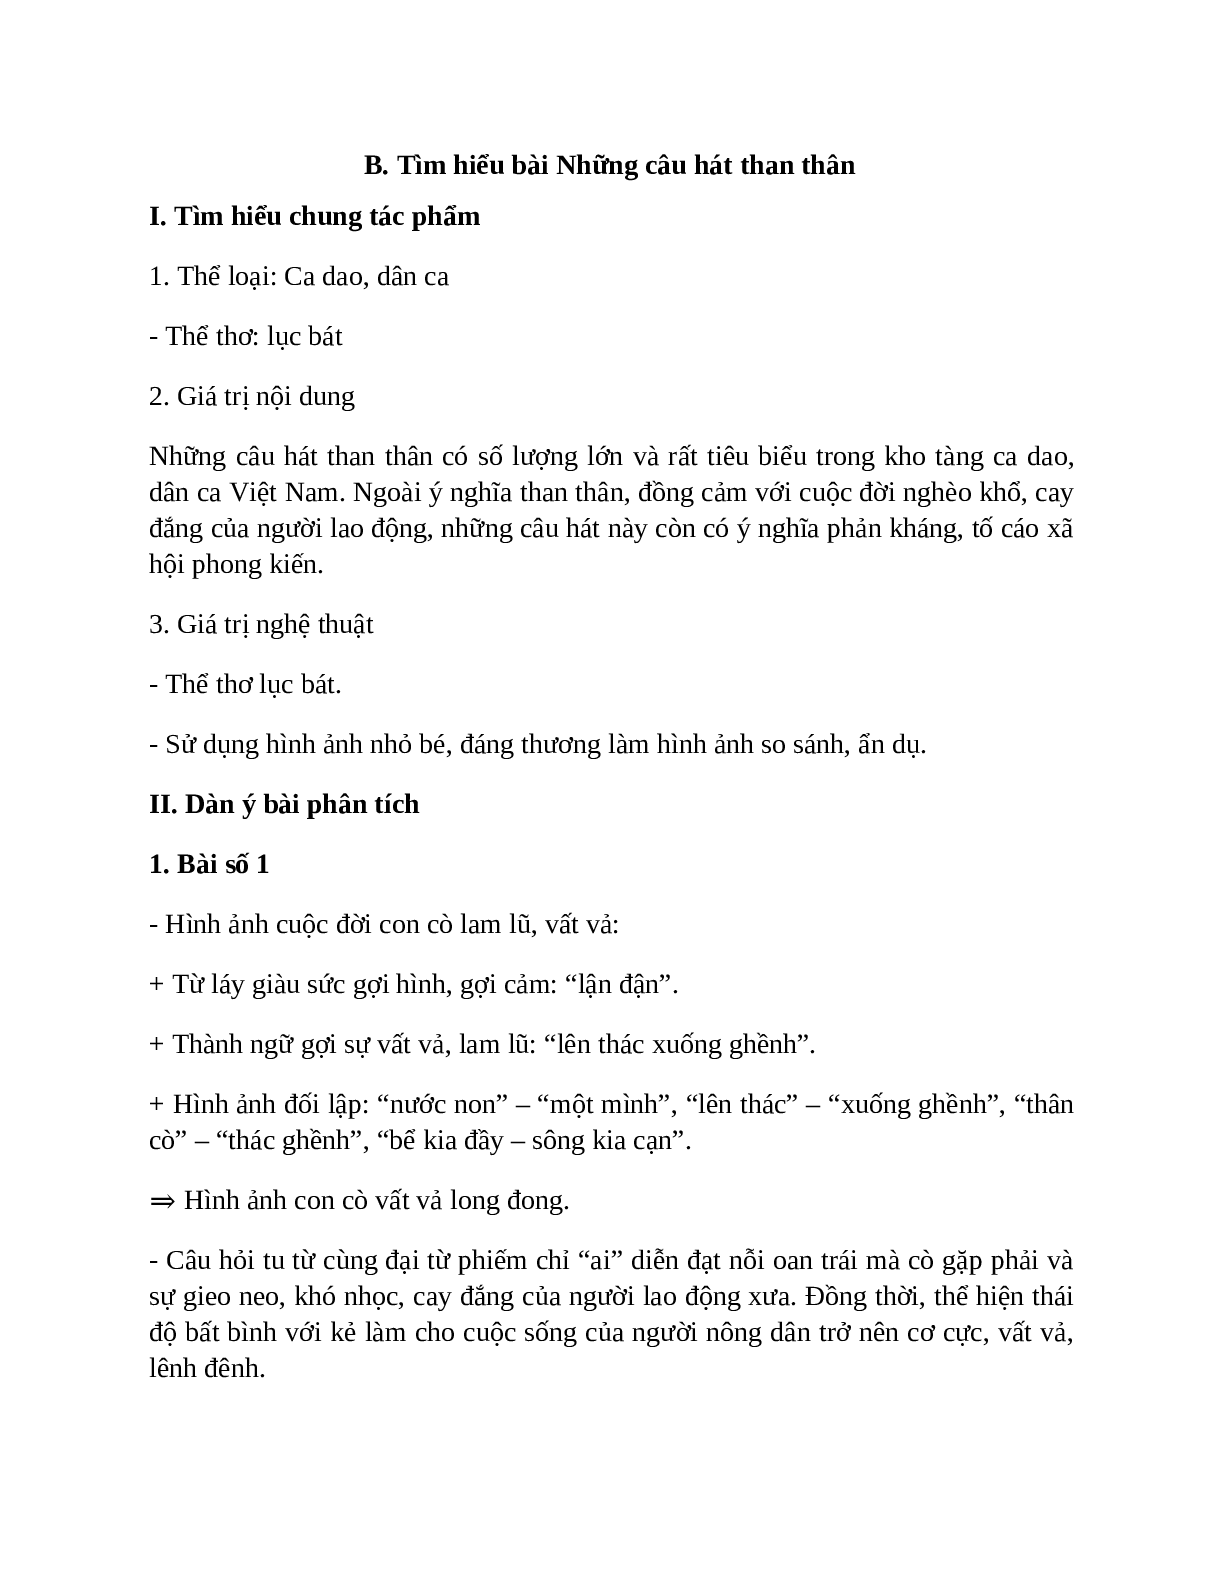 Sơ đồ tư duy bài Những câu hát than thân dễ nhớ, ngắn nhất - Ngữ văn lớp 7 (trang 2)